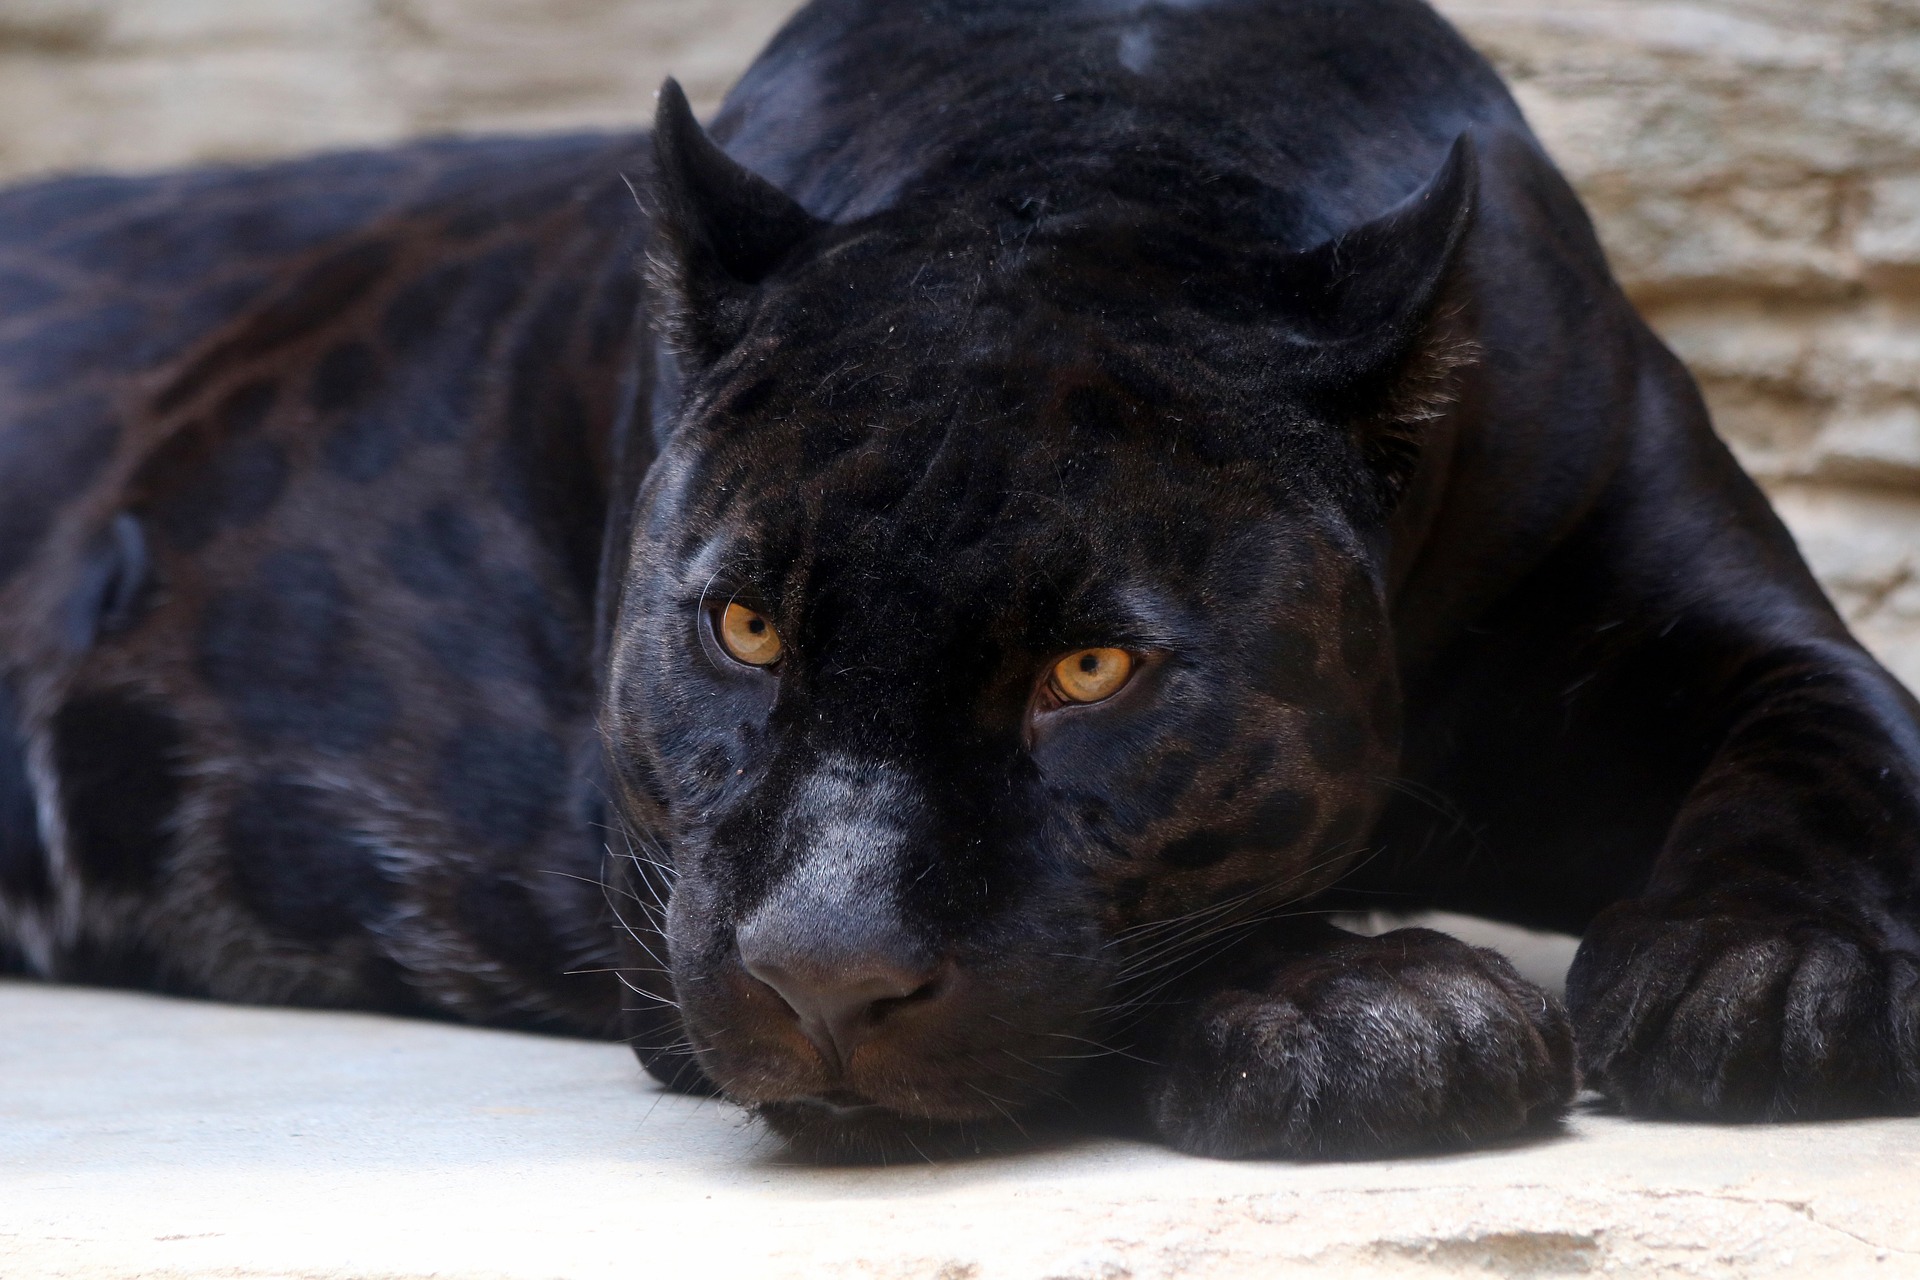 Schwarzer Panther, der in Ungarn gesichtet wurde, soll in tödlicher Gefahr sein